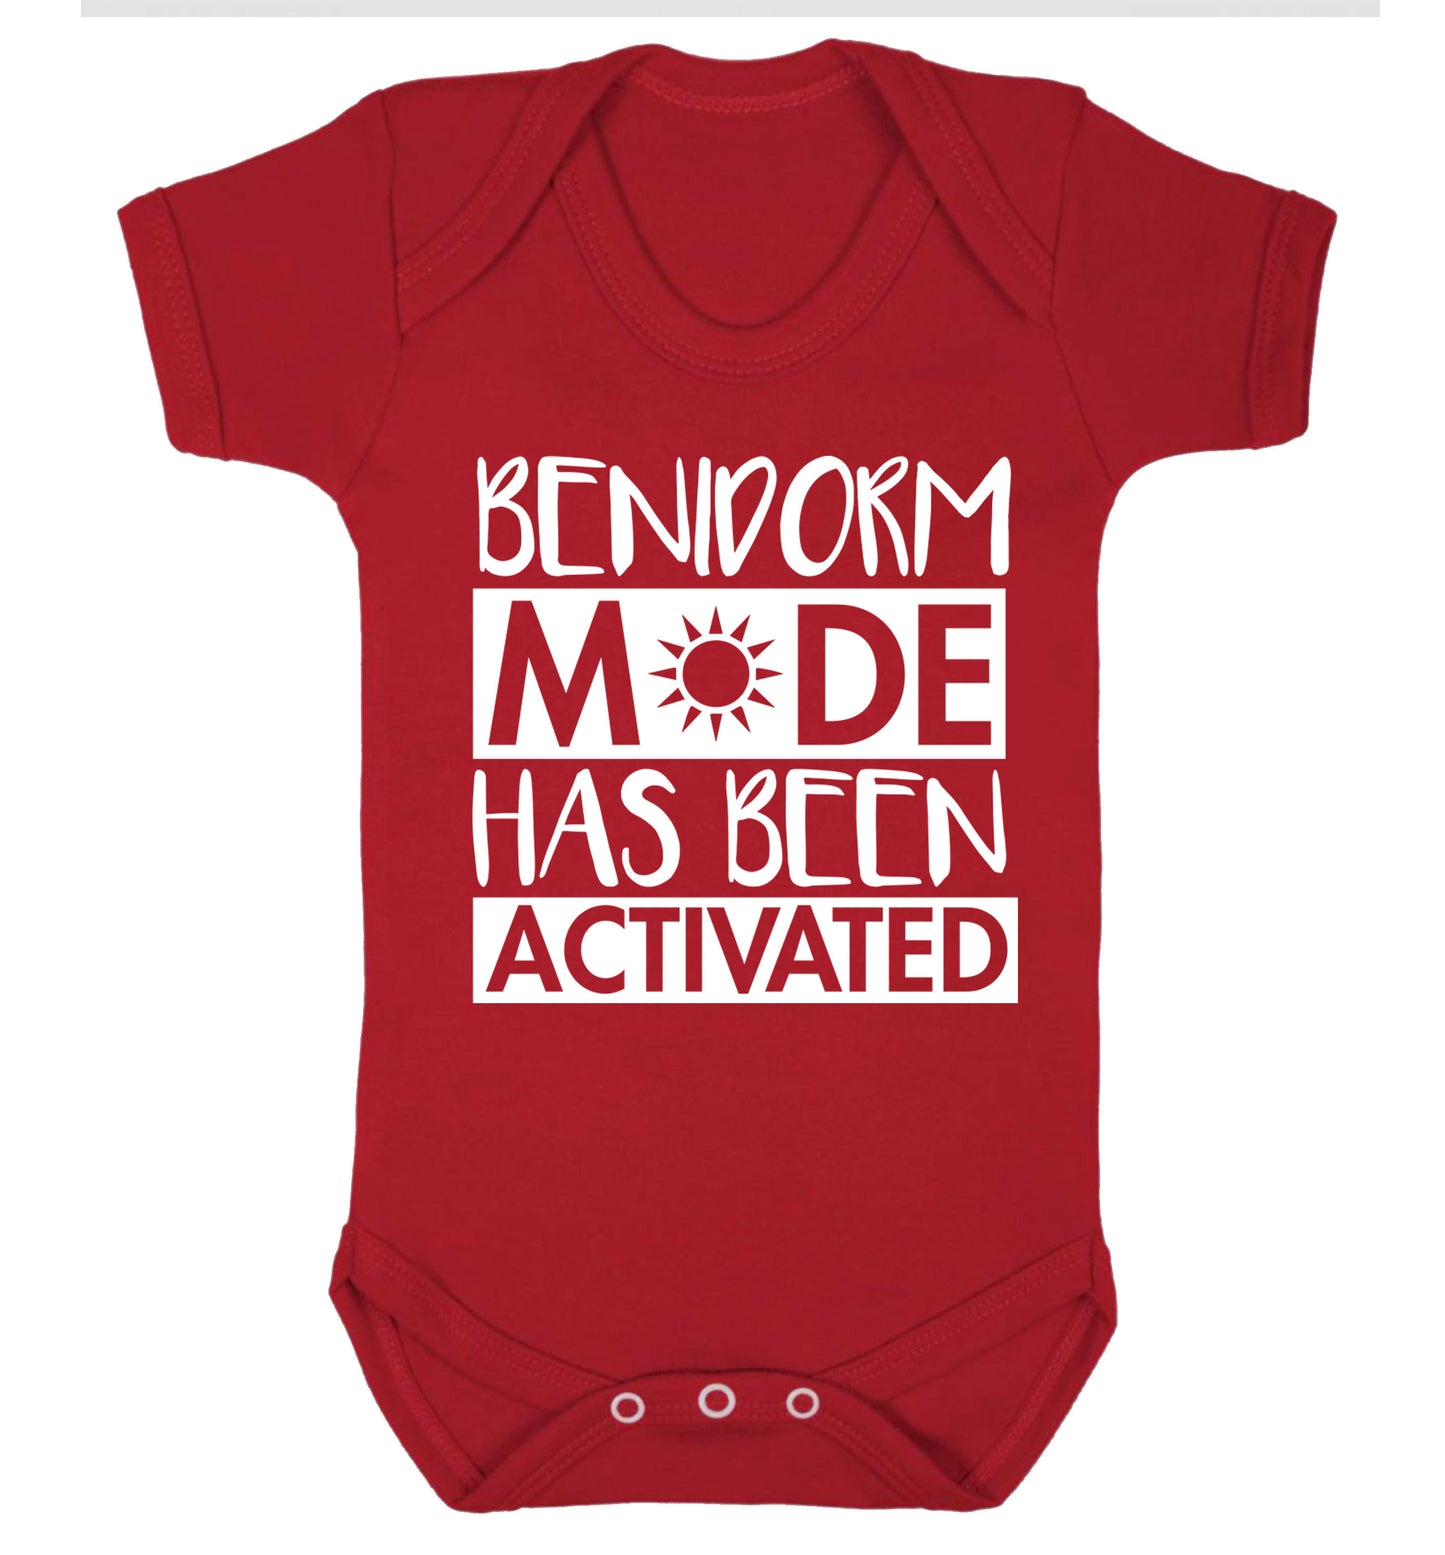 Benidorm mode has been activated Baby Vest red 18-24 months